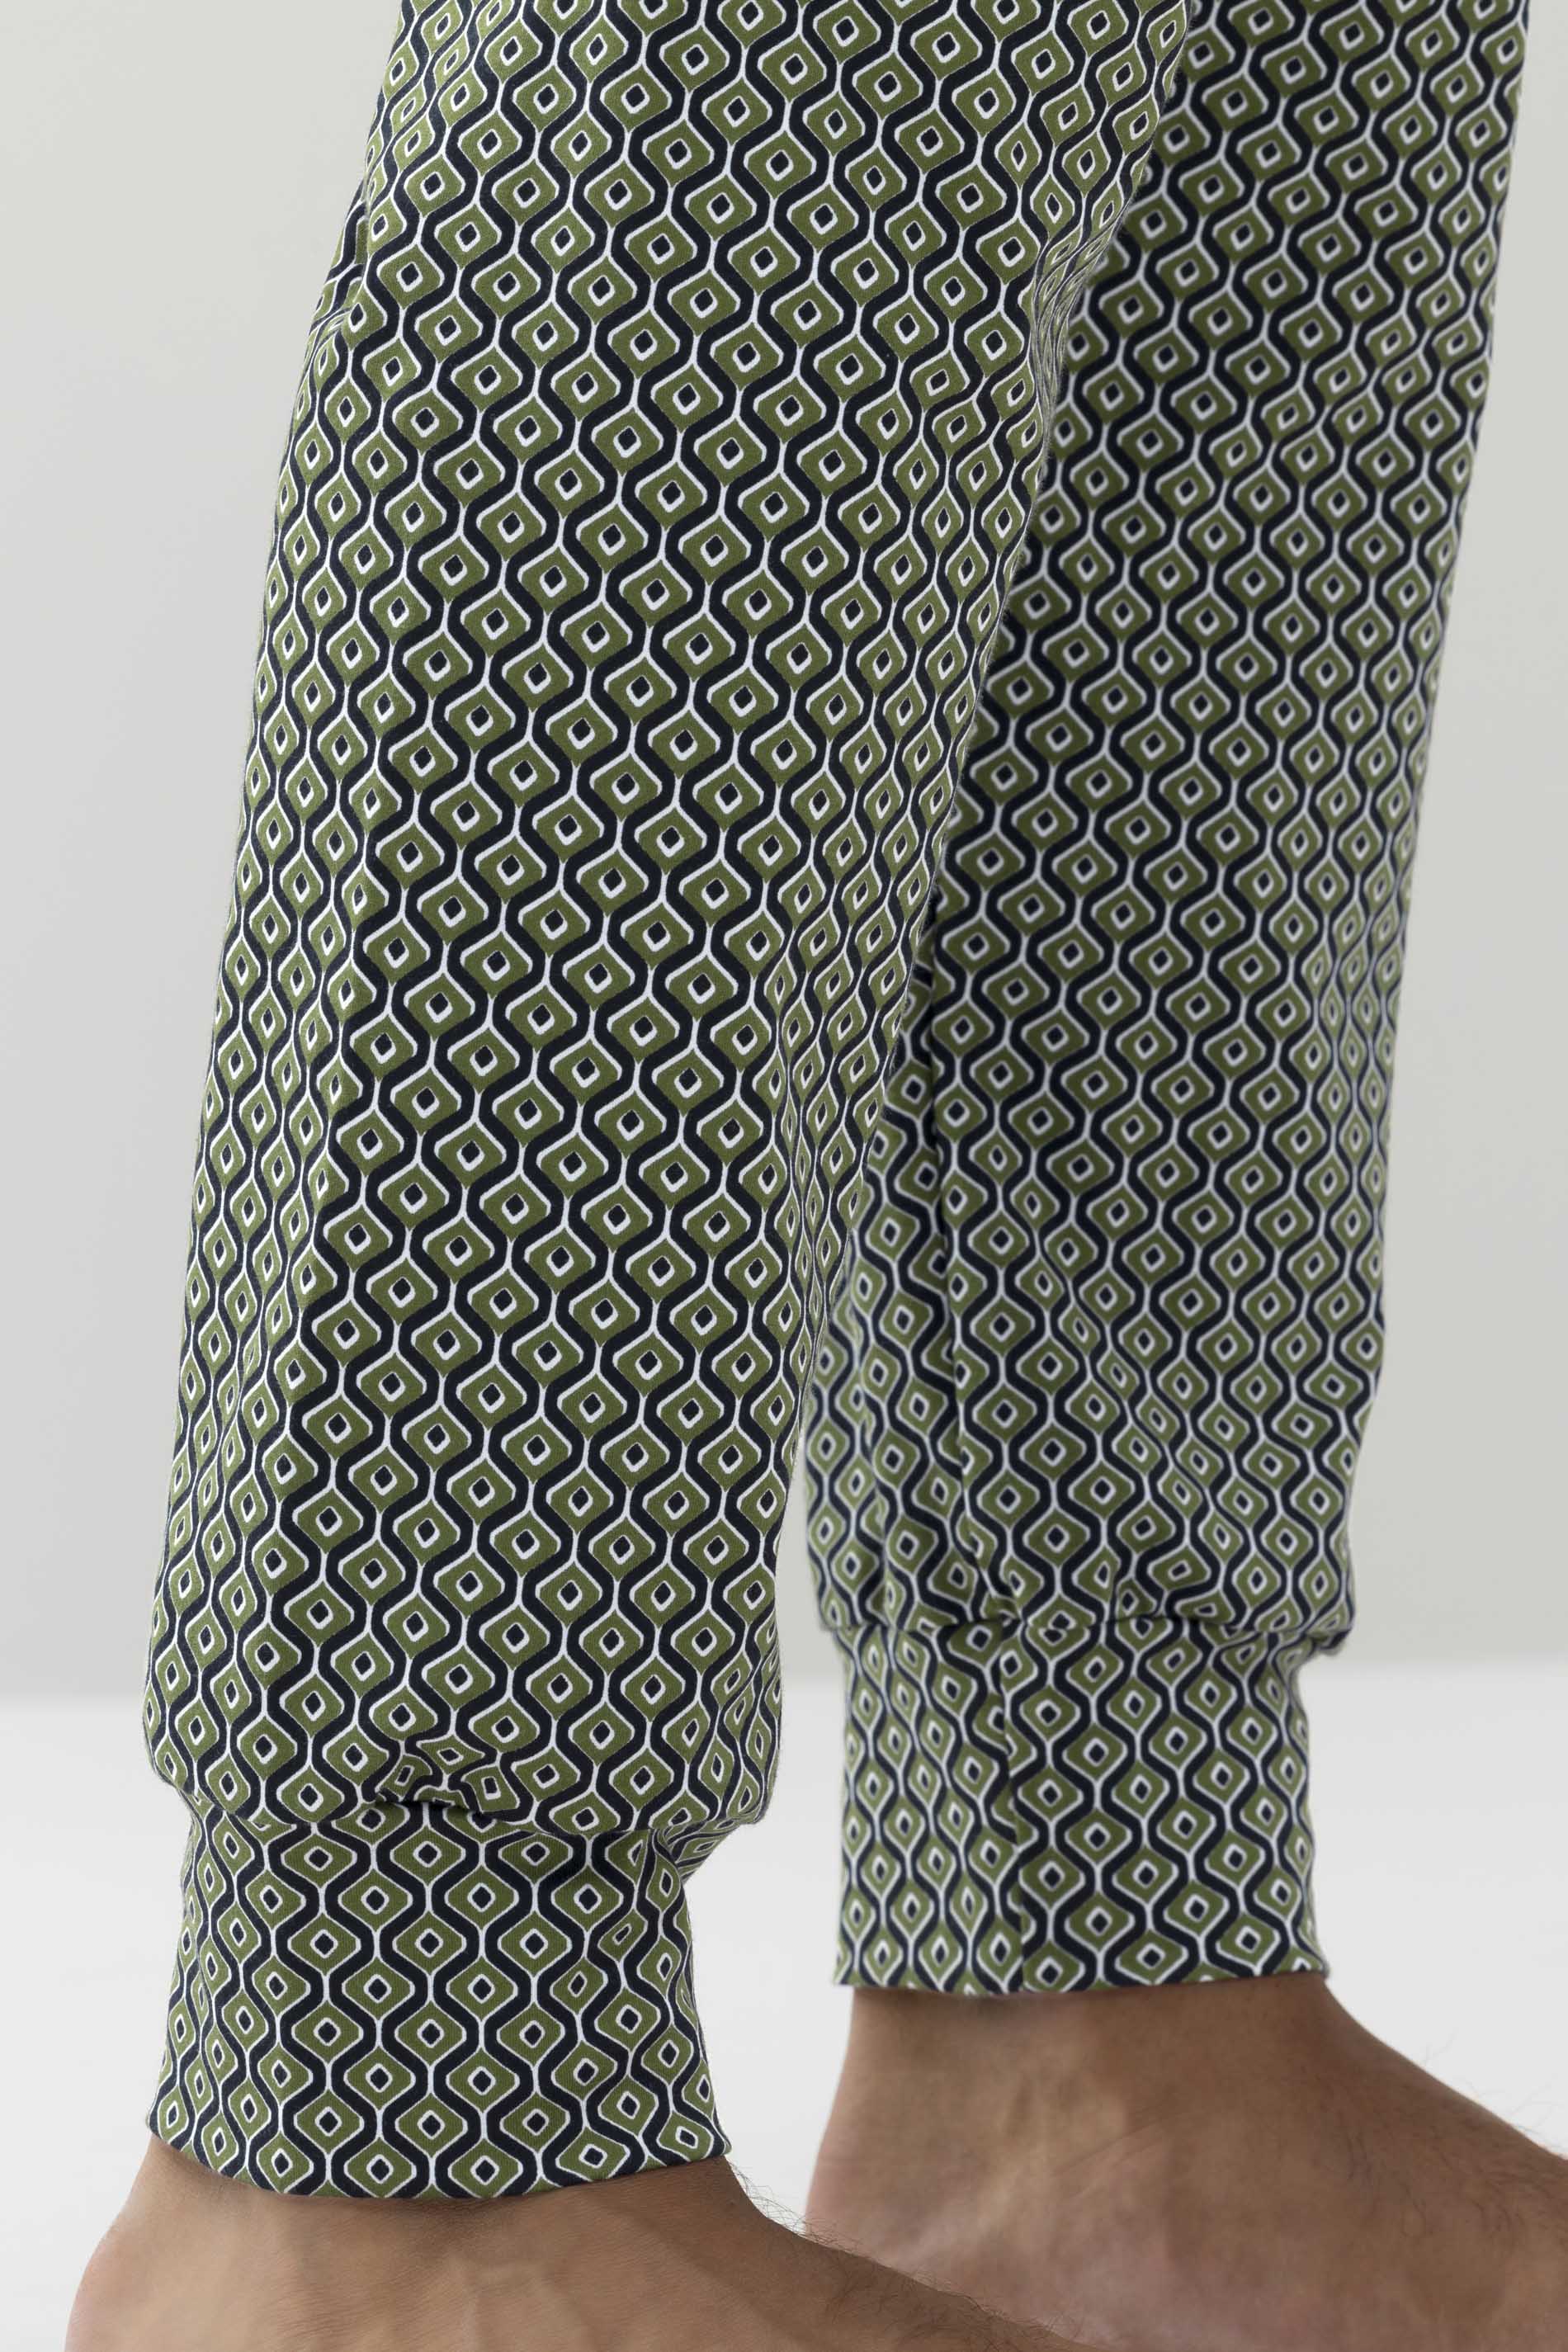 Pyjamas Serie Retro Pattern Detail View 02 | mey®